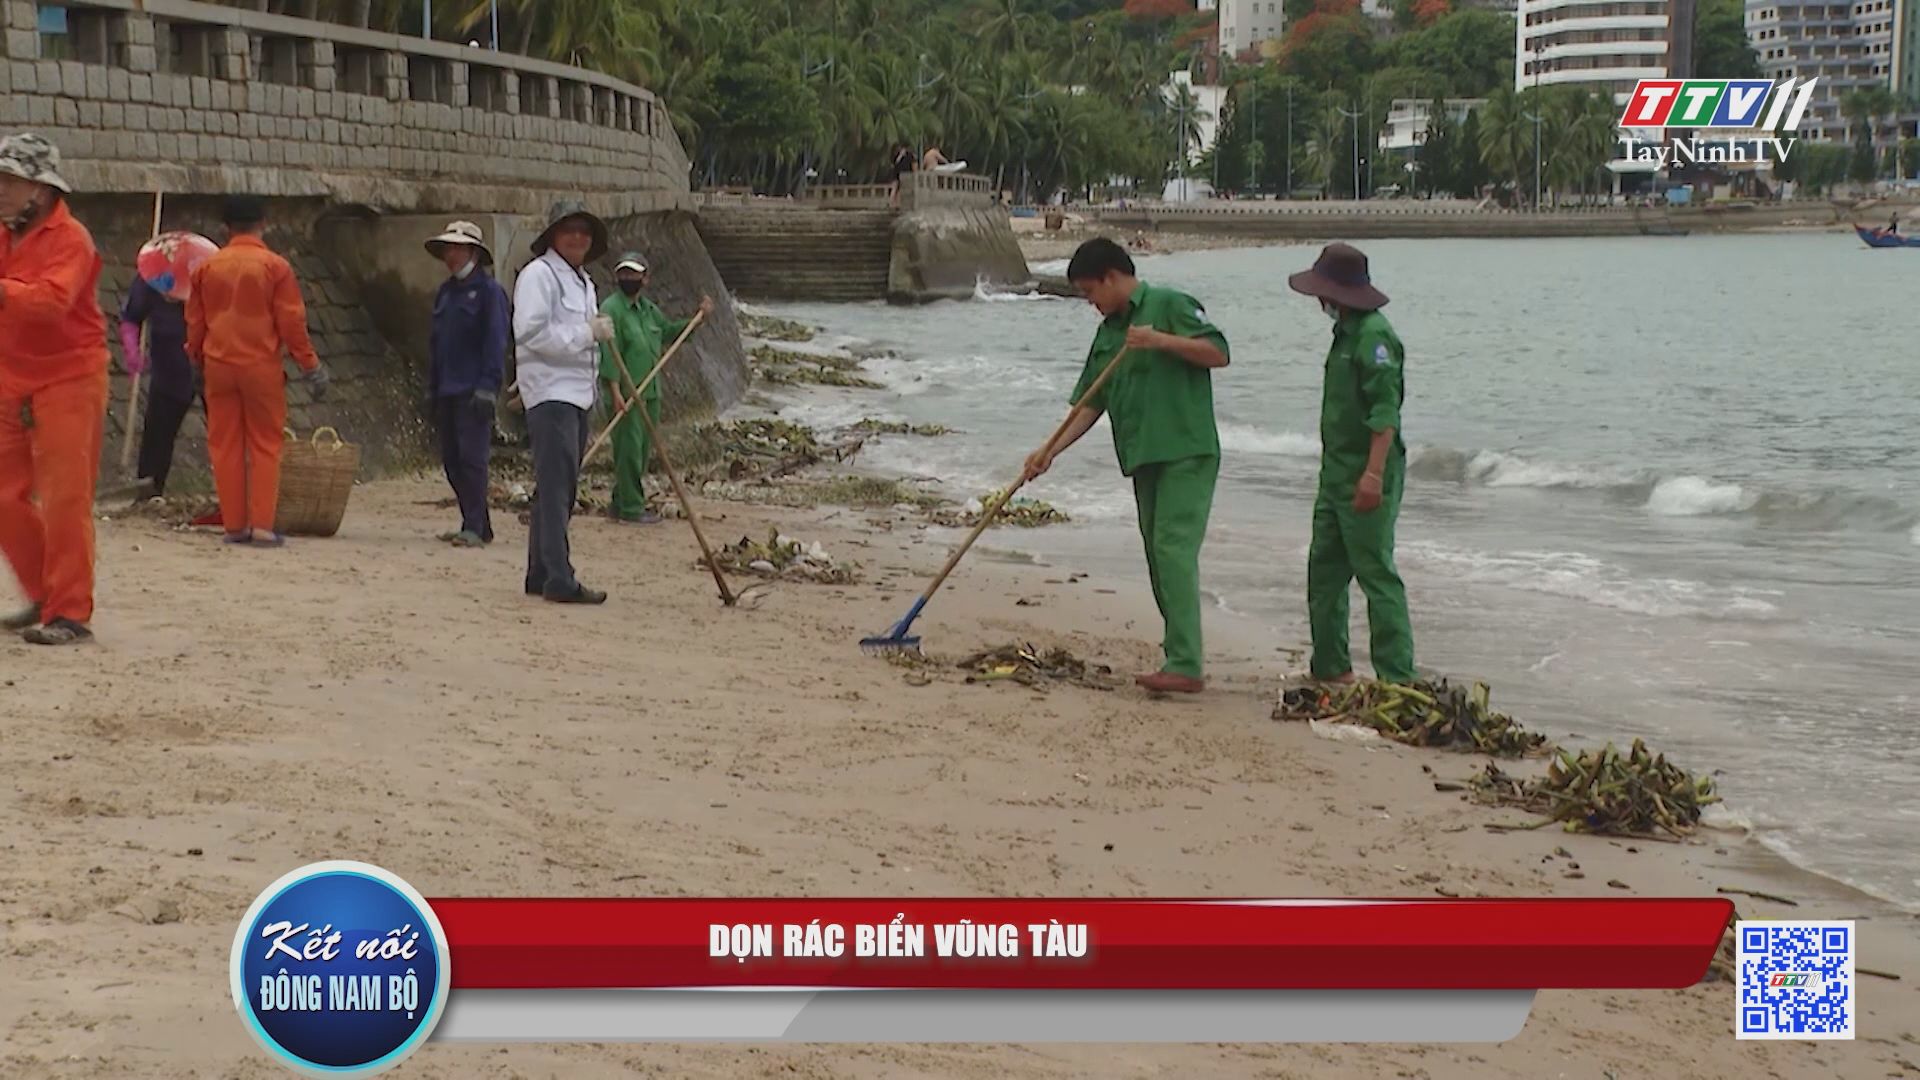 Dọn rác biển Vũng Tàu | Kết nối Đông Nam Bộ | TayNinhTV